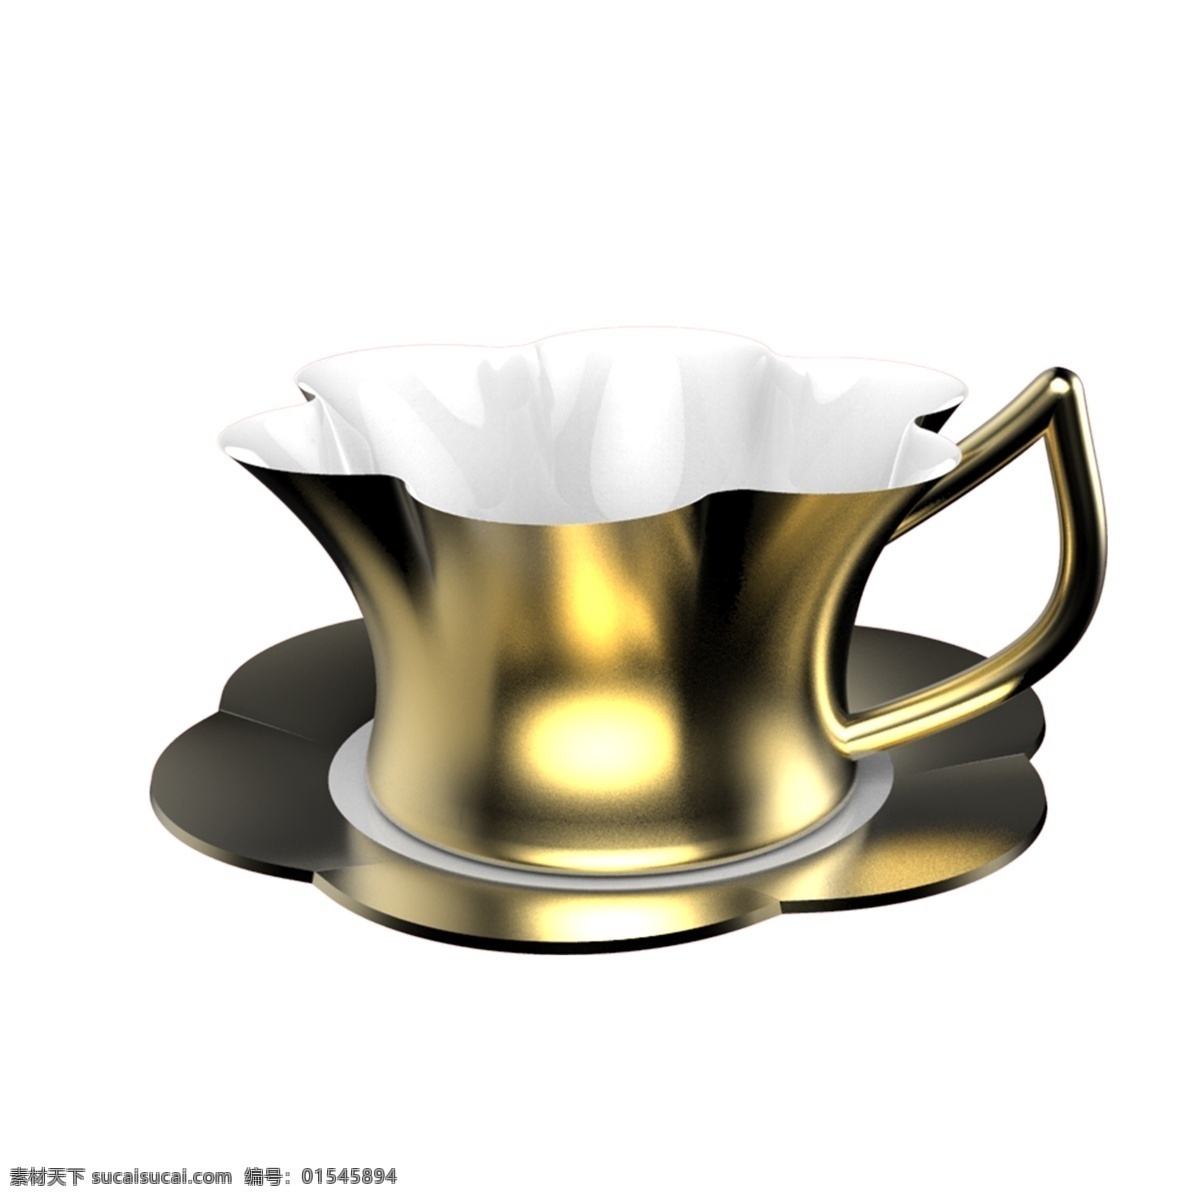 金属陶瓷 杯 免 抠 图案 杯子 陶瓷杯 水杯 咖啡杯 杯子模型 三维 立体 模型 茶具 生活用品 家居用品 喝水